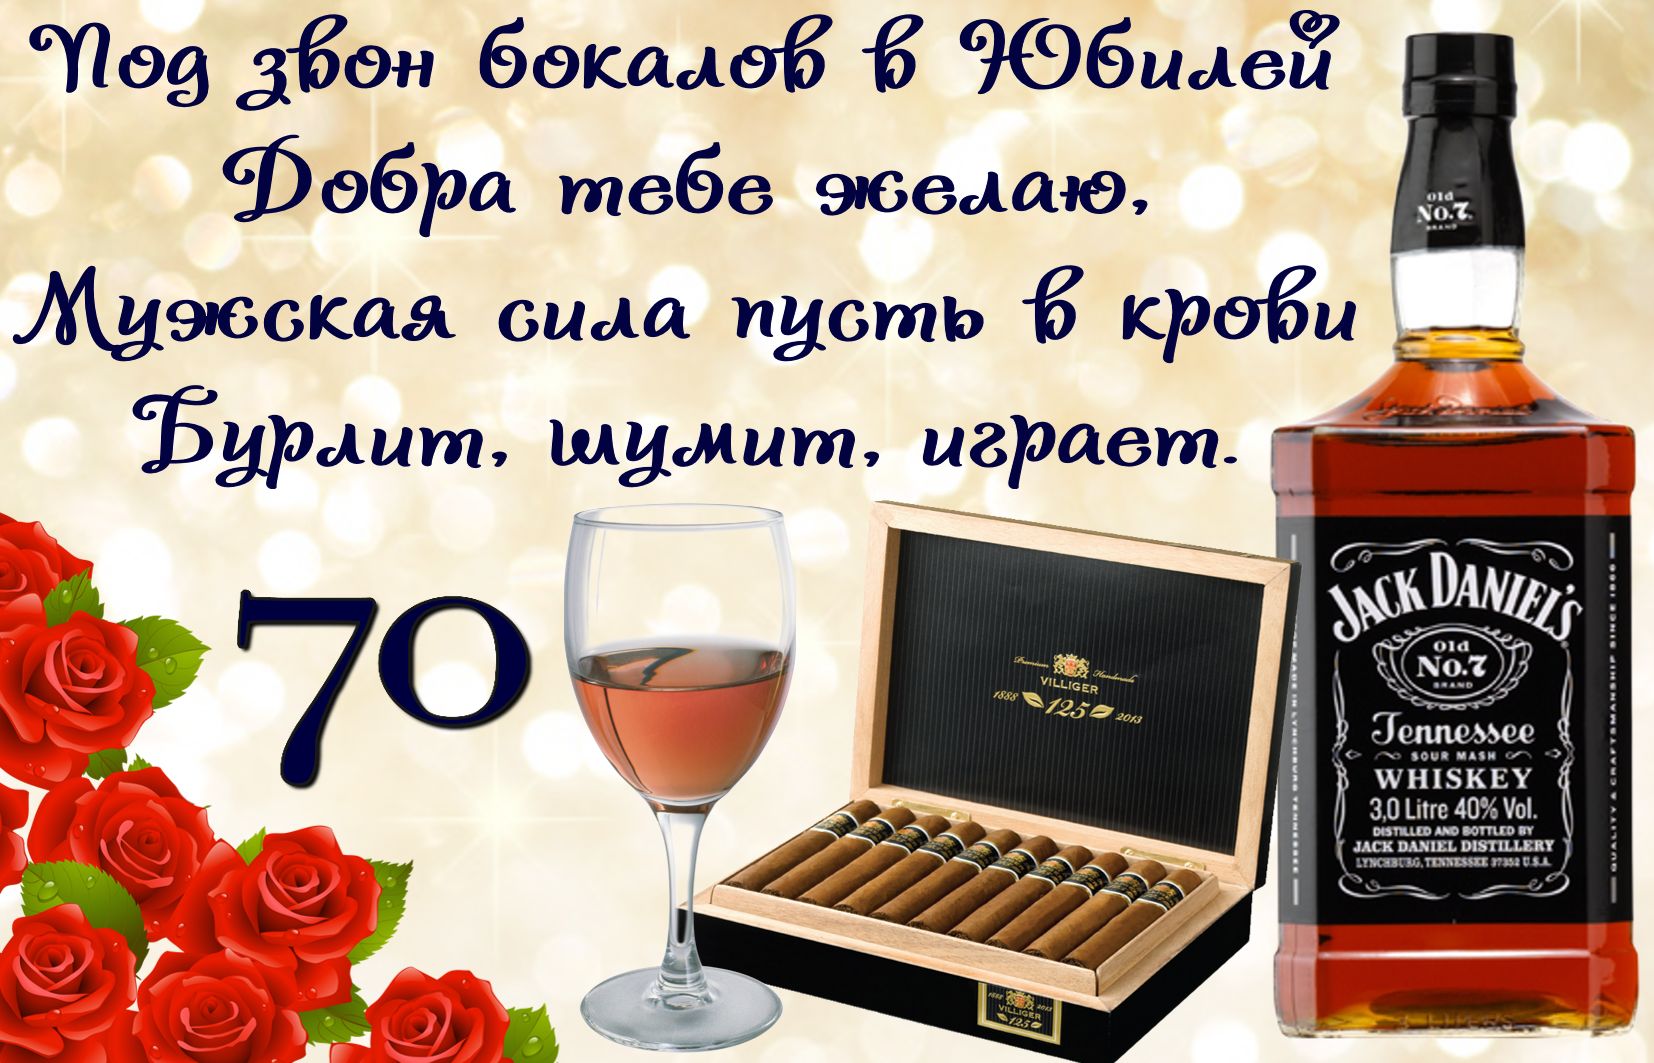 Открытка для мужчины с сигарами и виски